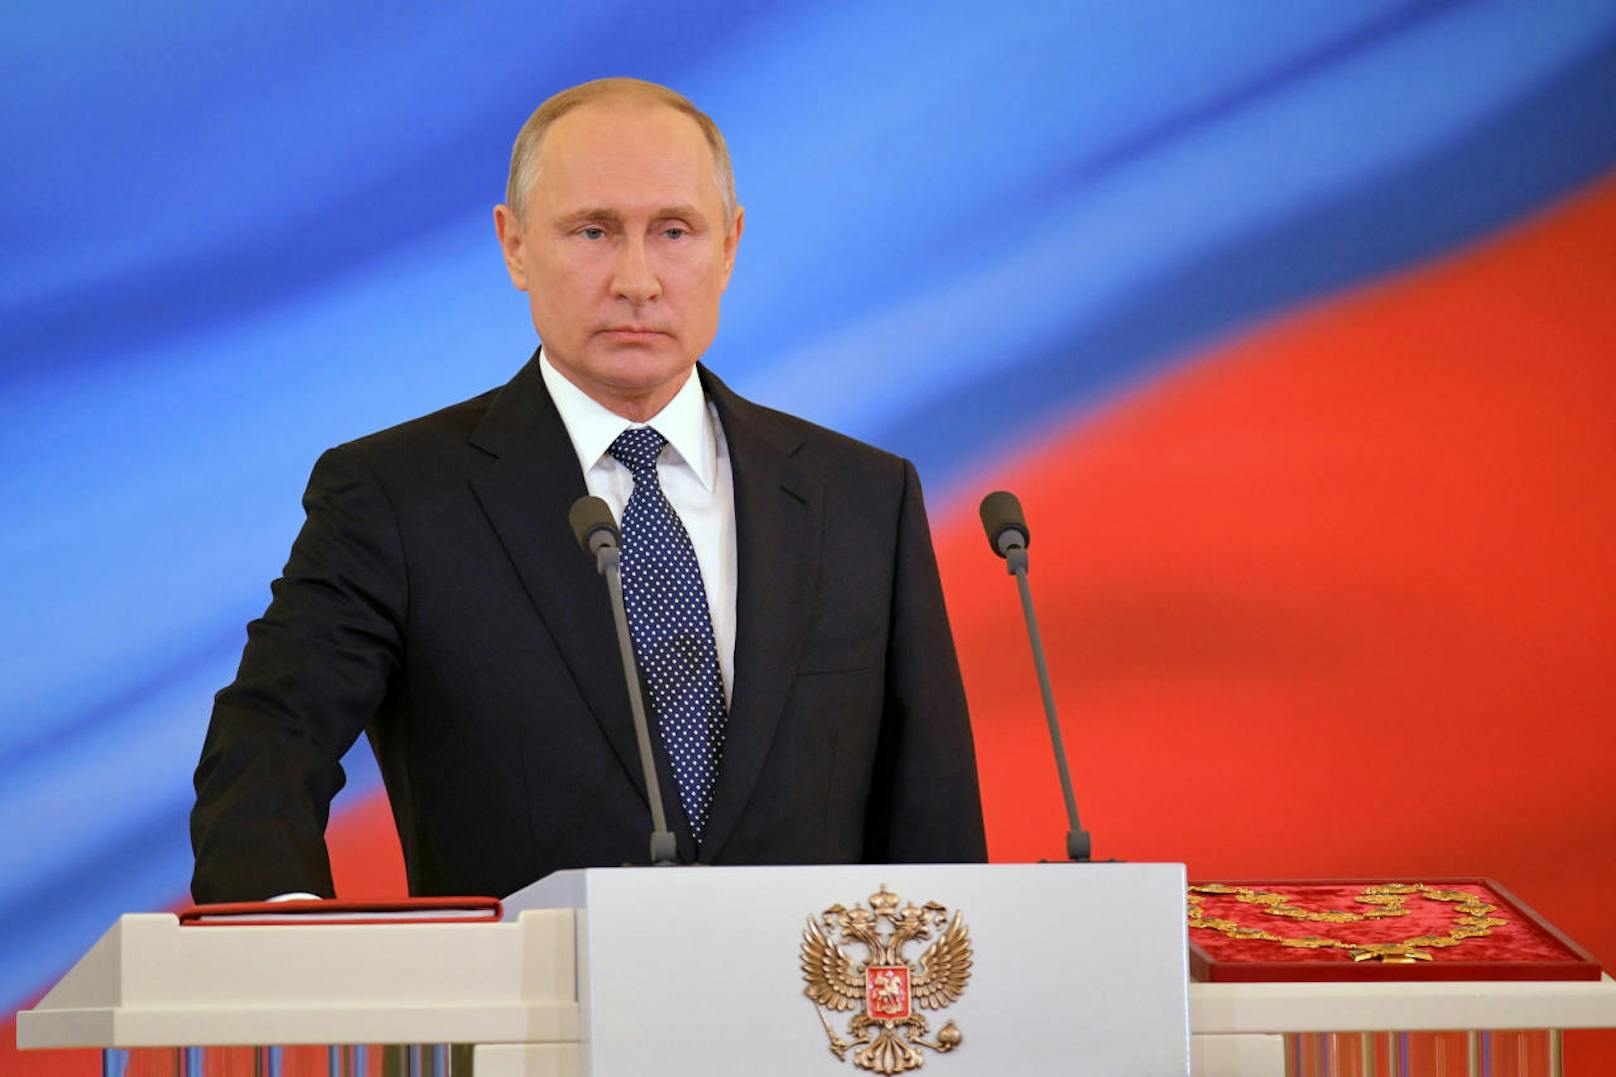 "Ich betrachte es als meine Aufgabe und als meinen Lebenssinn, mein Möglichstes für Russland zu geben, in der Gegenwart und in der Zukunft", erklärte Russlands alter neuer Präsident bei seiner kurzen Rede.